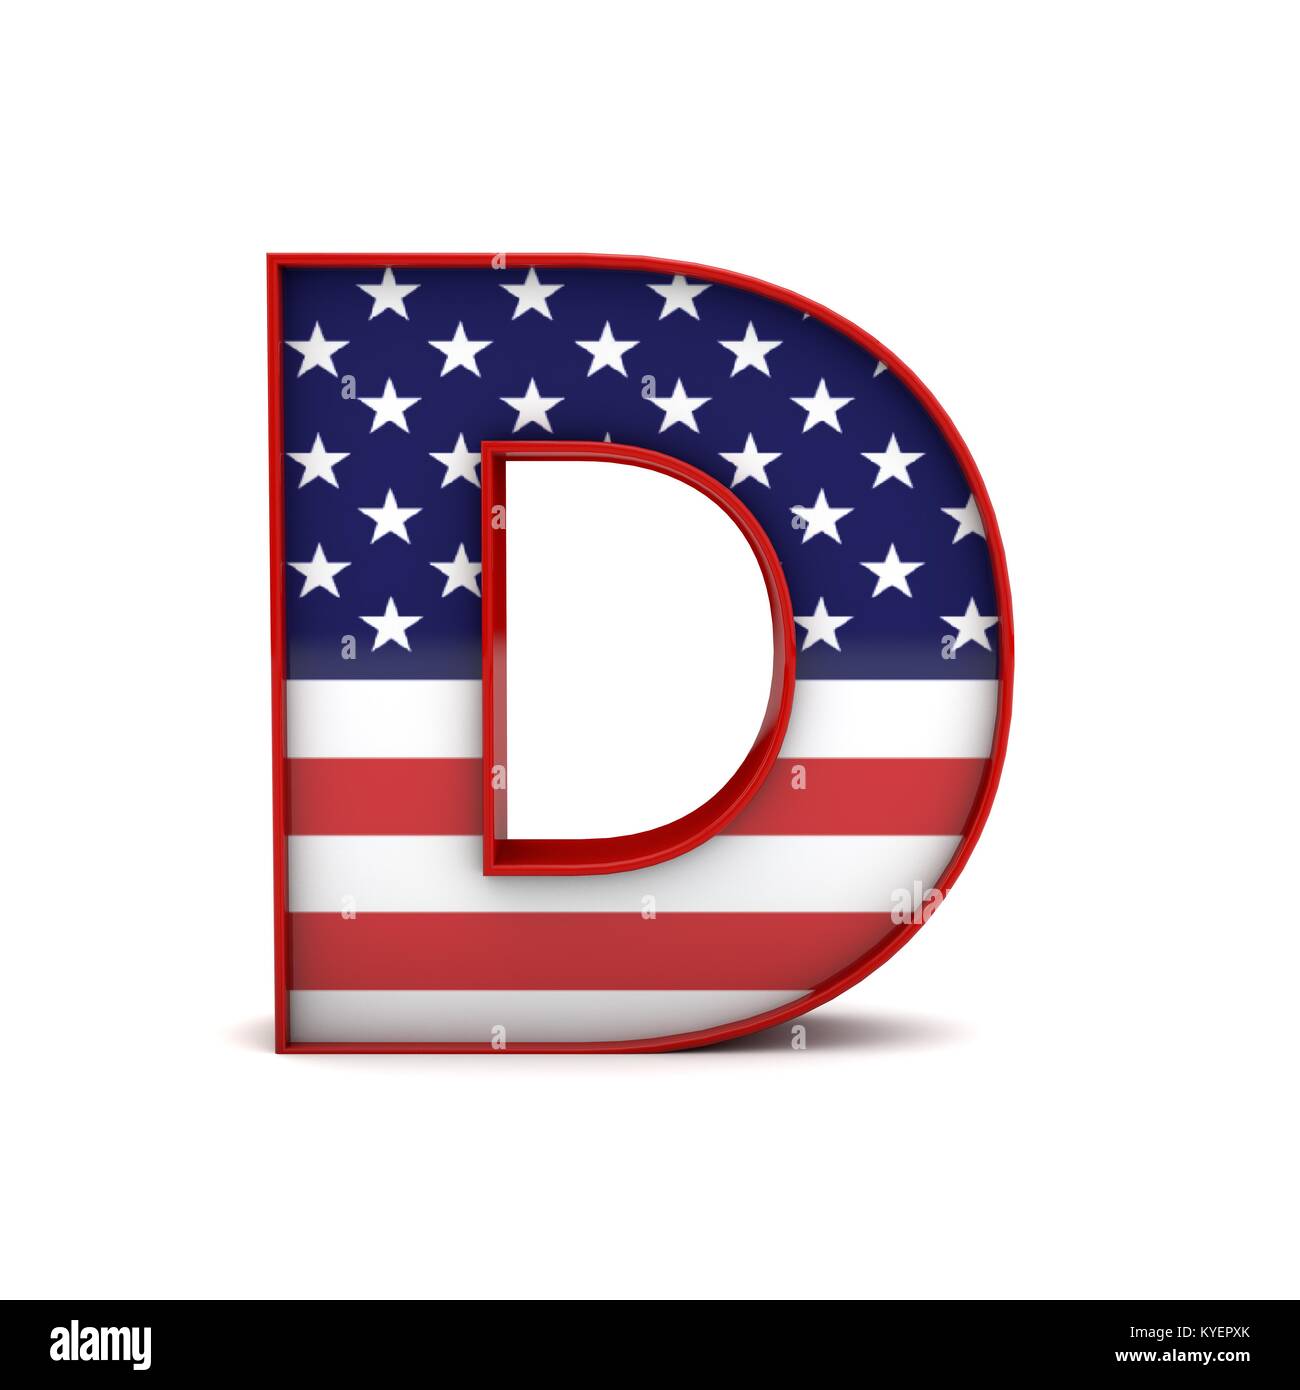 https://c8.alamy.com/comp/KYEPXK/letter-d-stars-and-stripes-american-flag-lettering-font-3d-rendering-KYEPXK.jpg